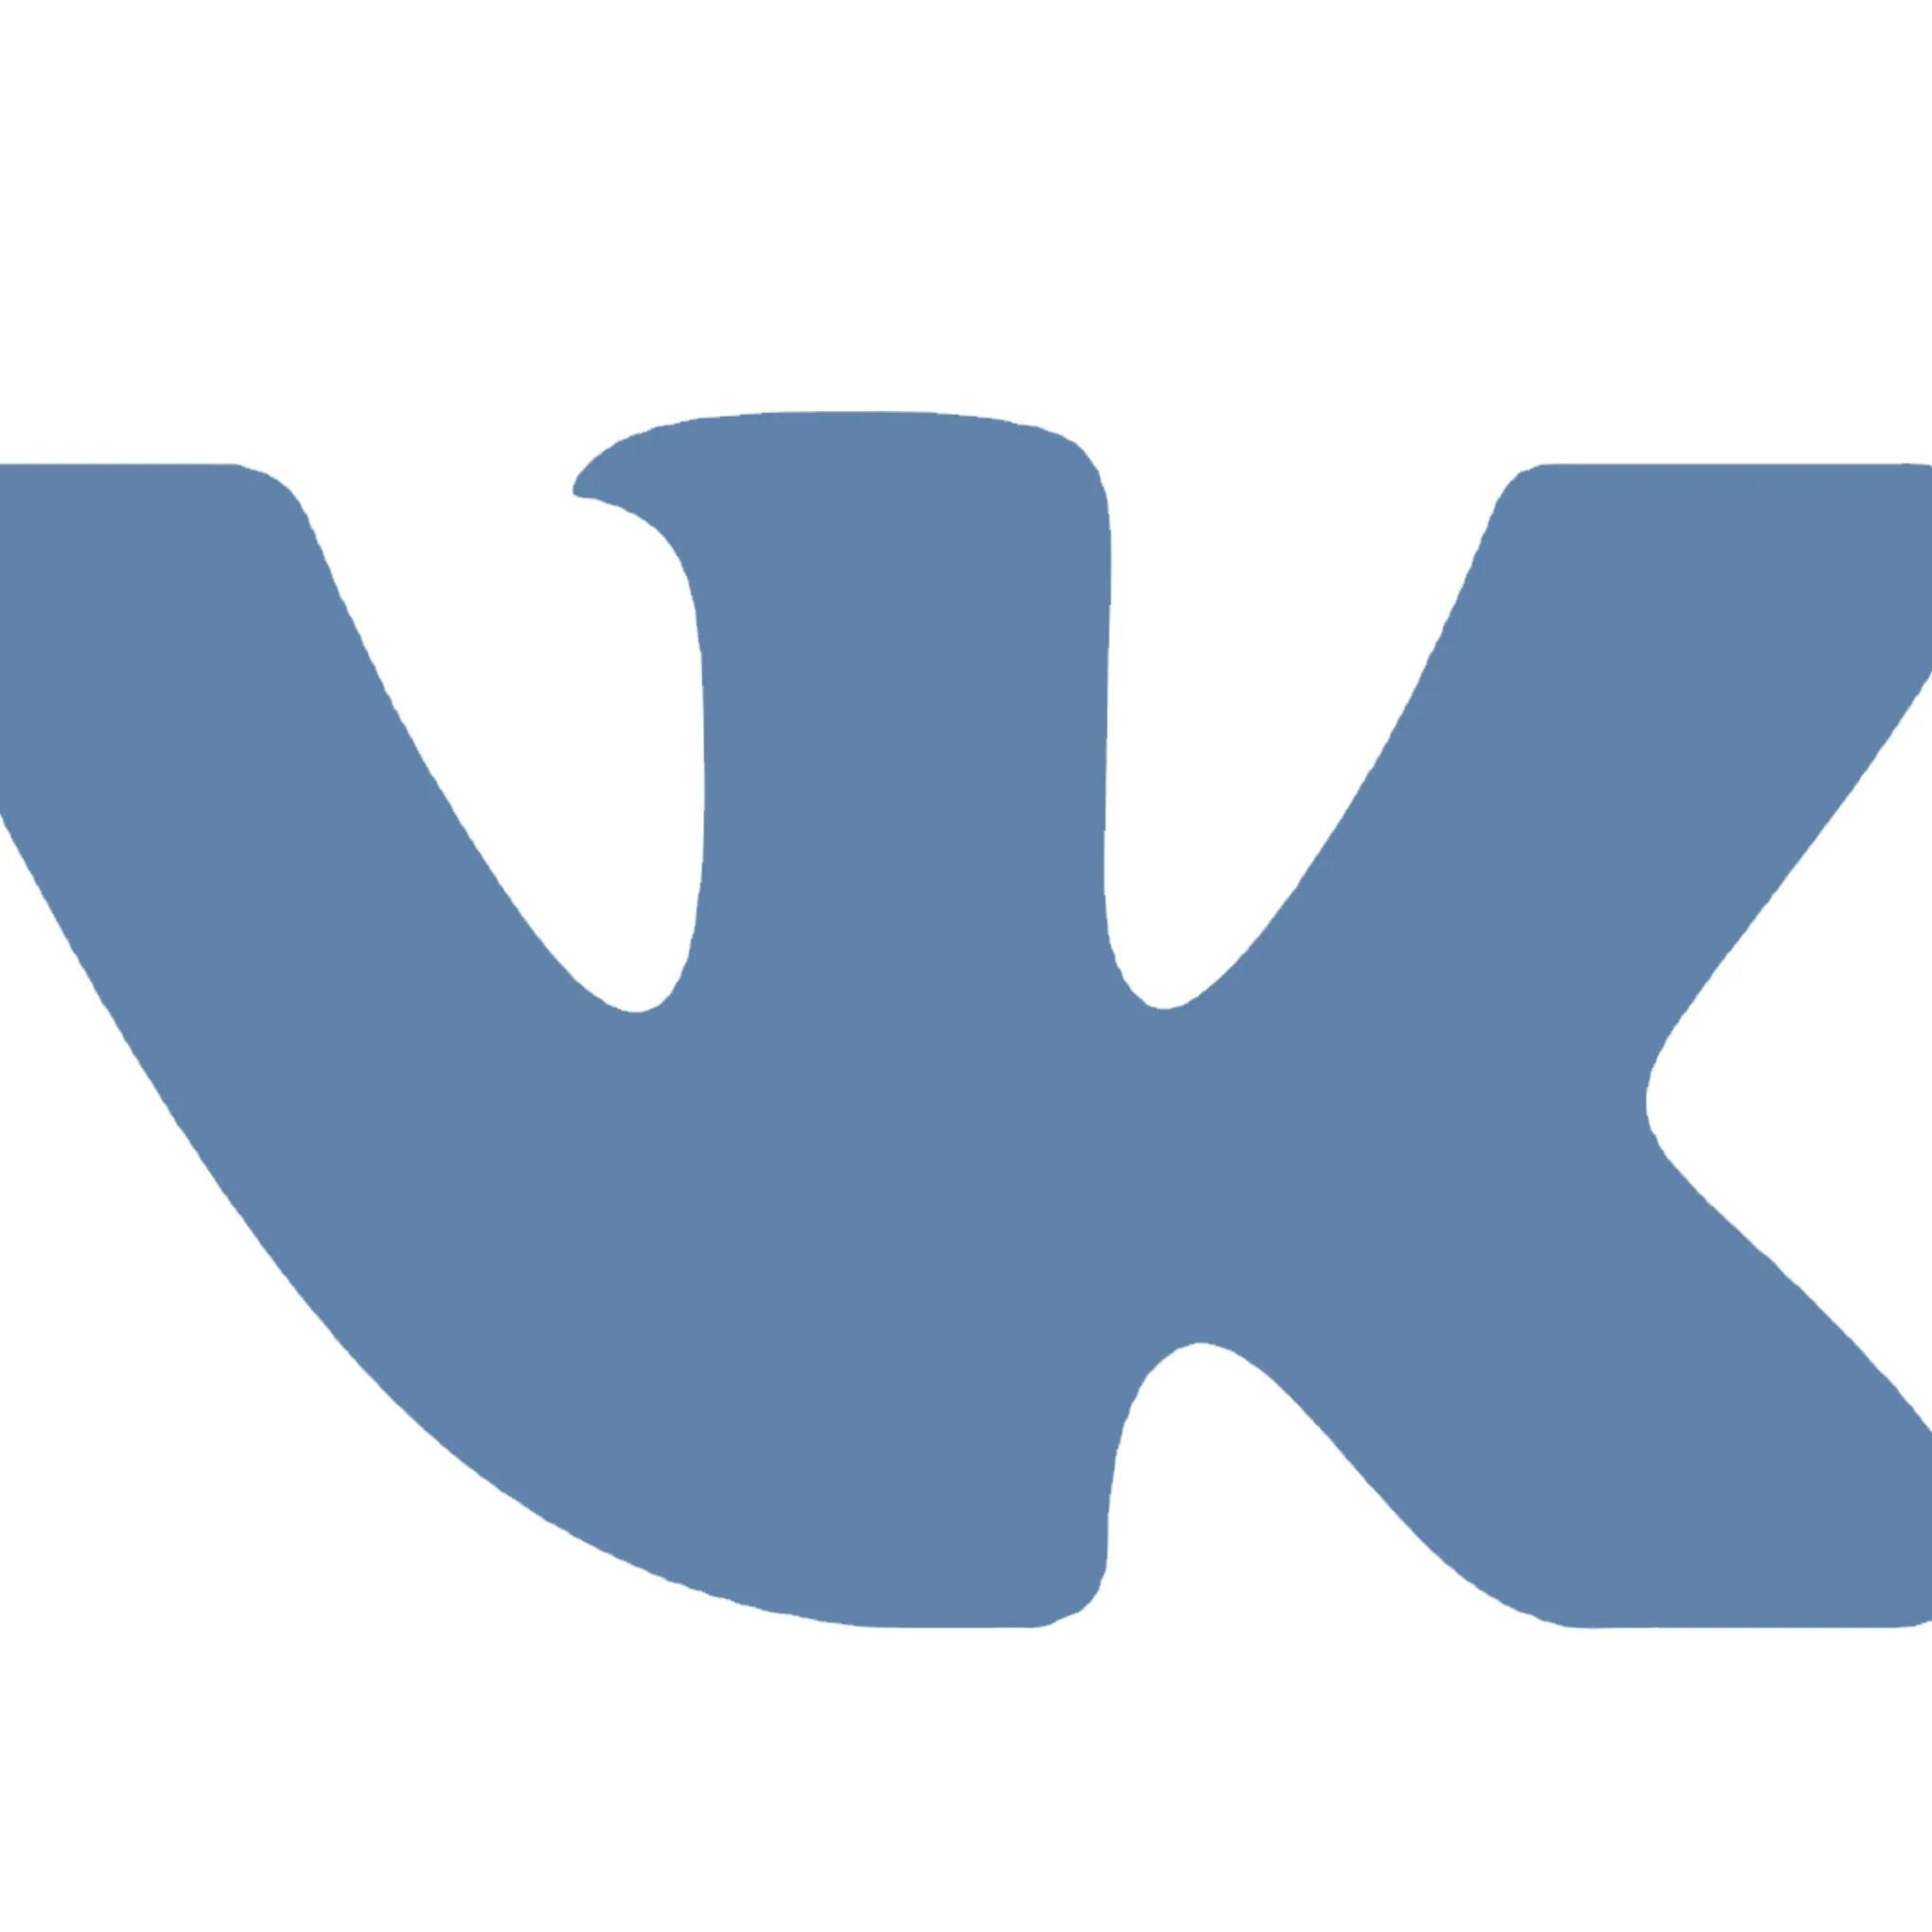 Vk com thetimeofrussia03. Иконка ВК. Логотип ВК svg. Иконка ВК зеленая. Значок ВК на прозрачном фоне для визитки.